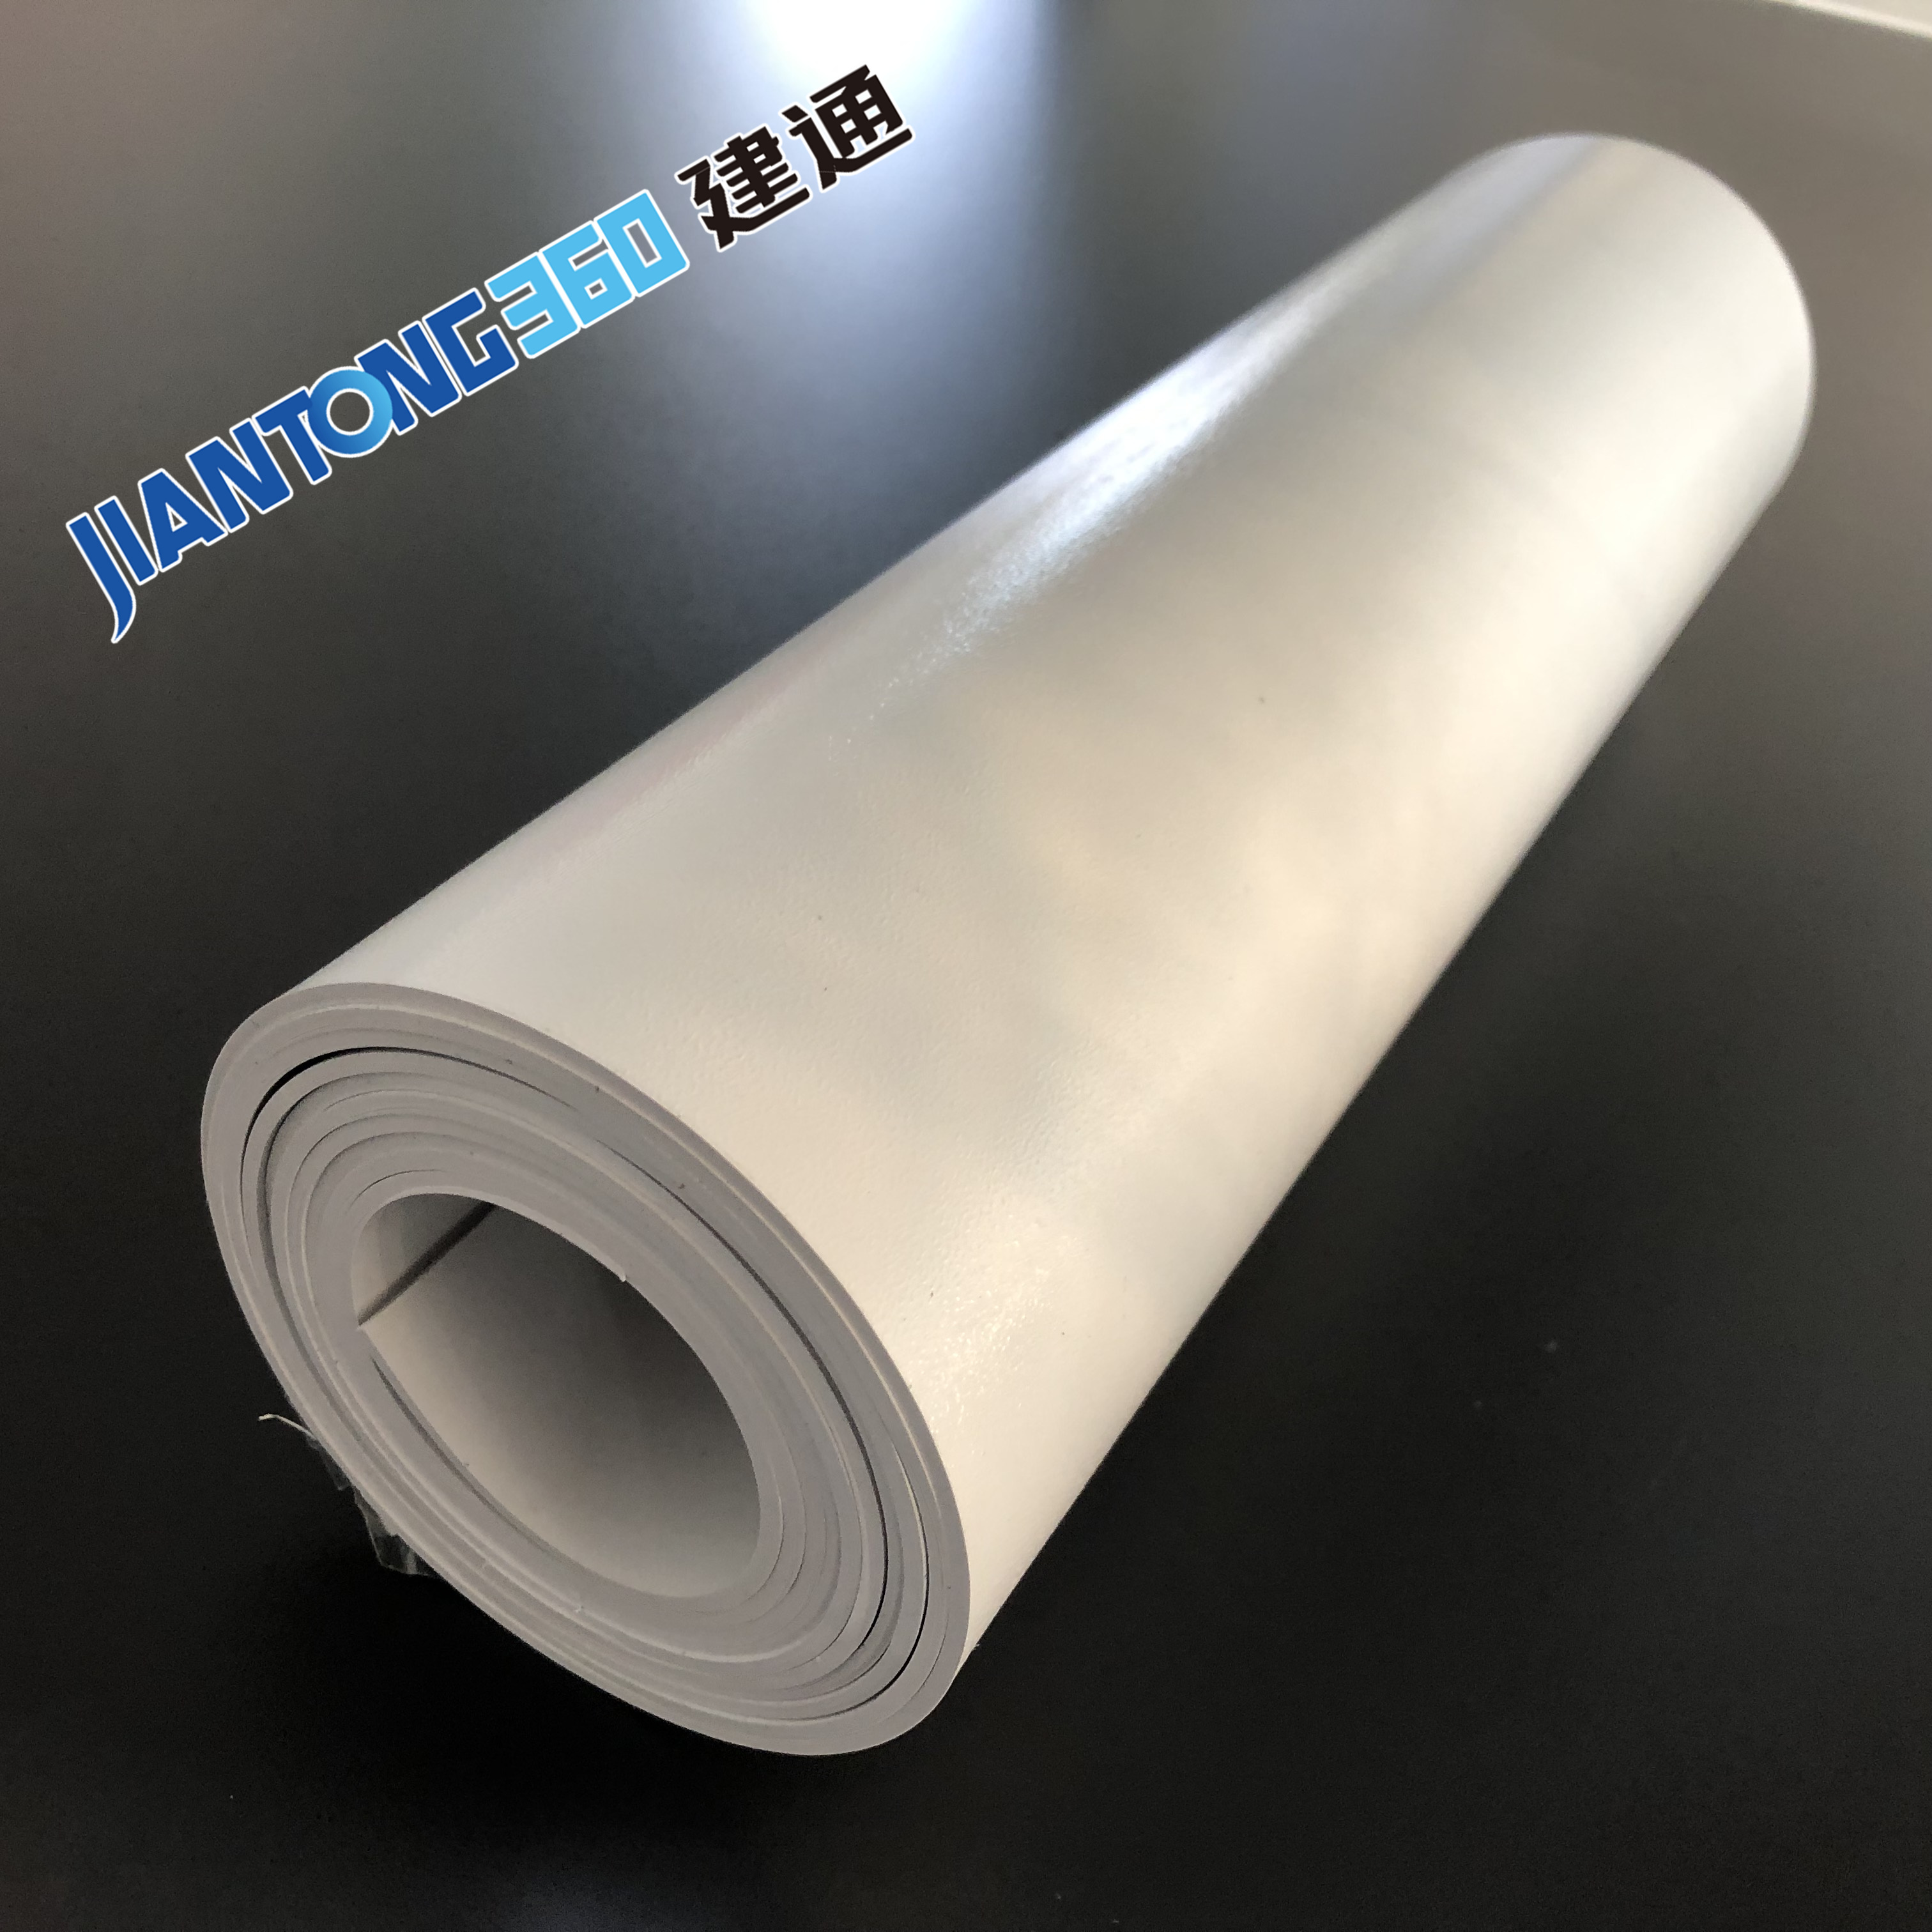 Mua PVC Geomembrane lót,PVC Geomembrane lót Giá ,PVC Geomembrane lót Brands,PVC Geomembrane lót Nhà sản xuất,PVC Geomembrane lót Quotes,PVC Geomembrane lót Công ty